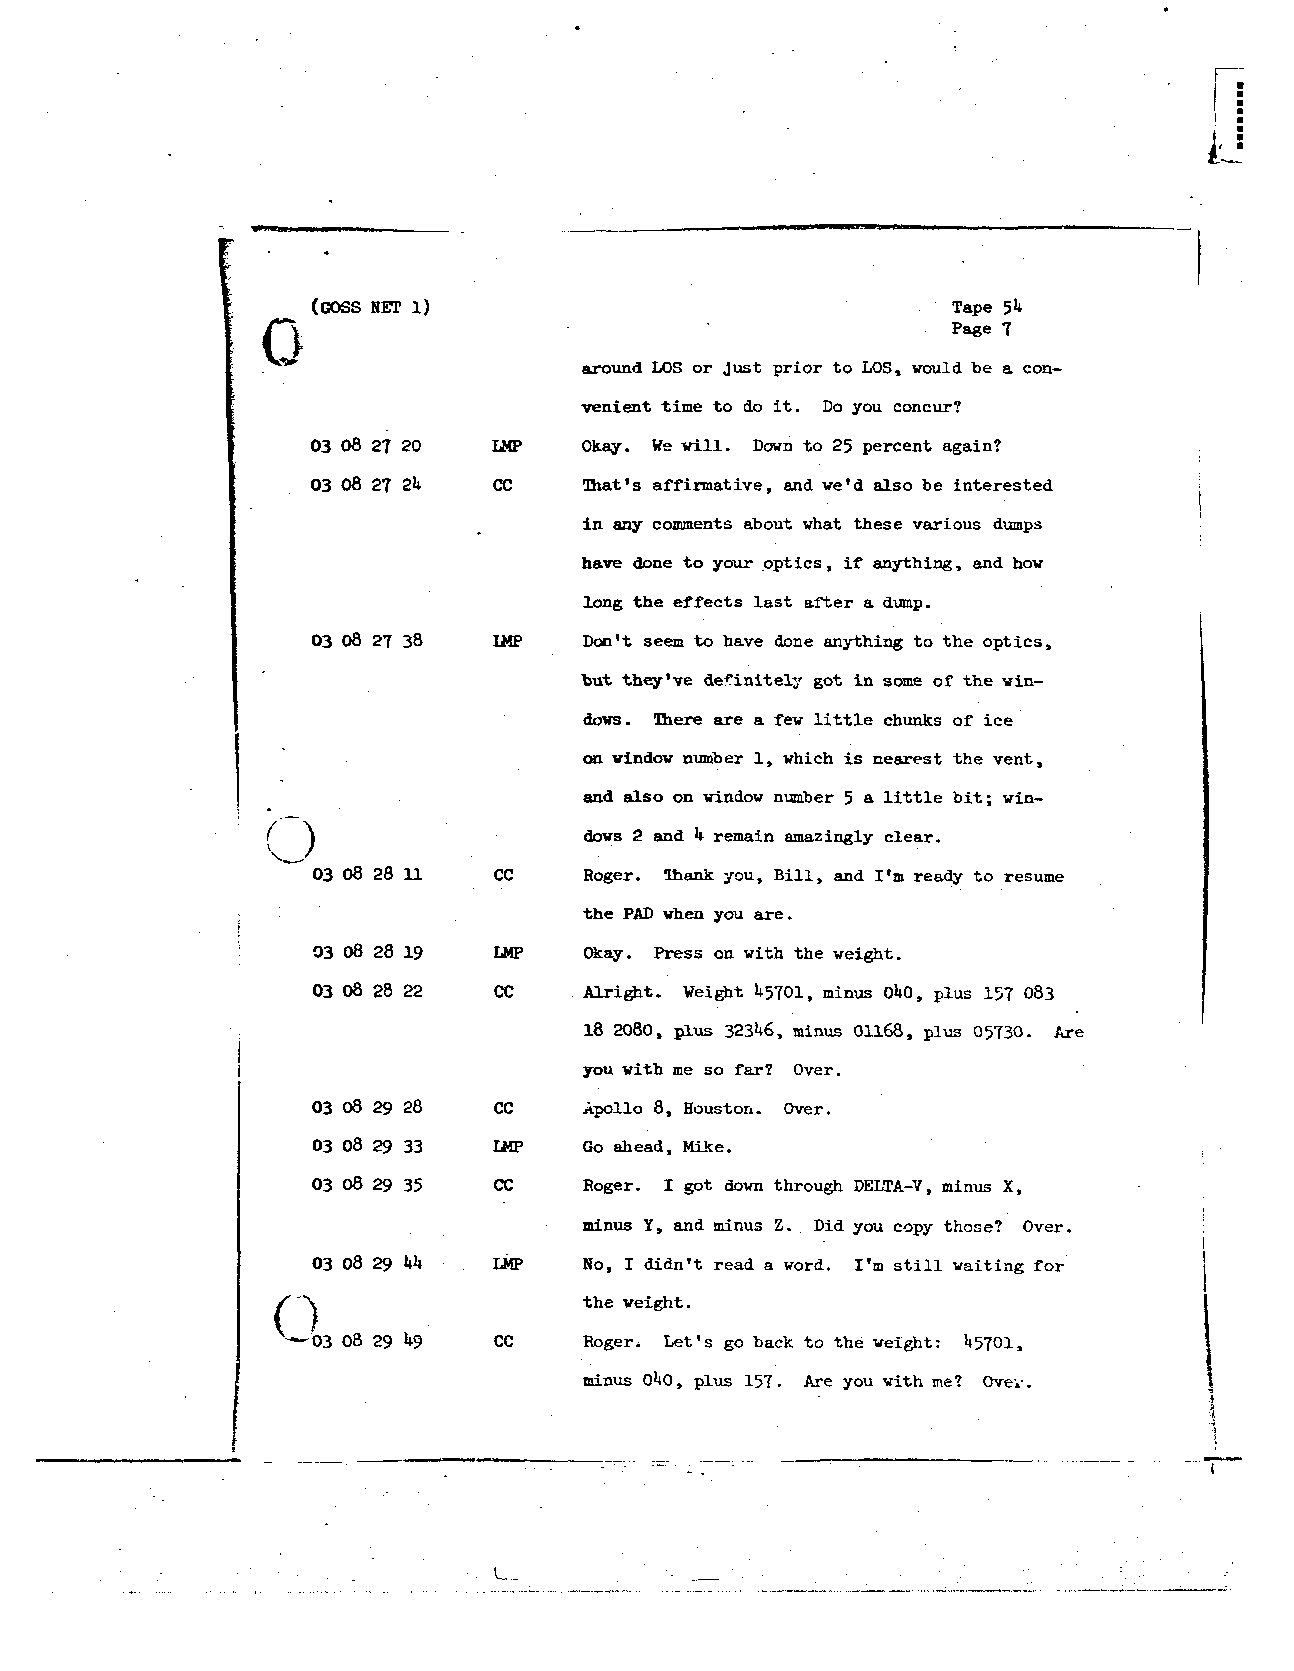 Page 432 of Apollo 8’s original transcript